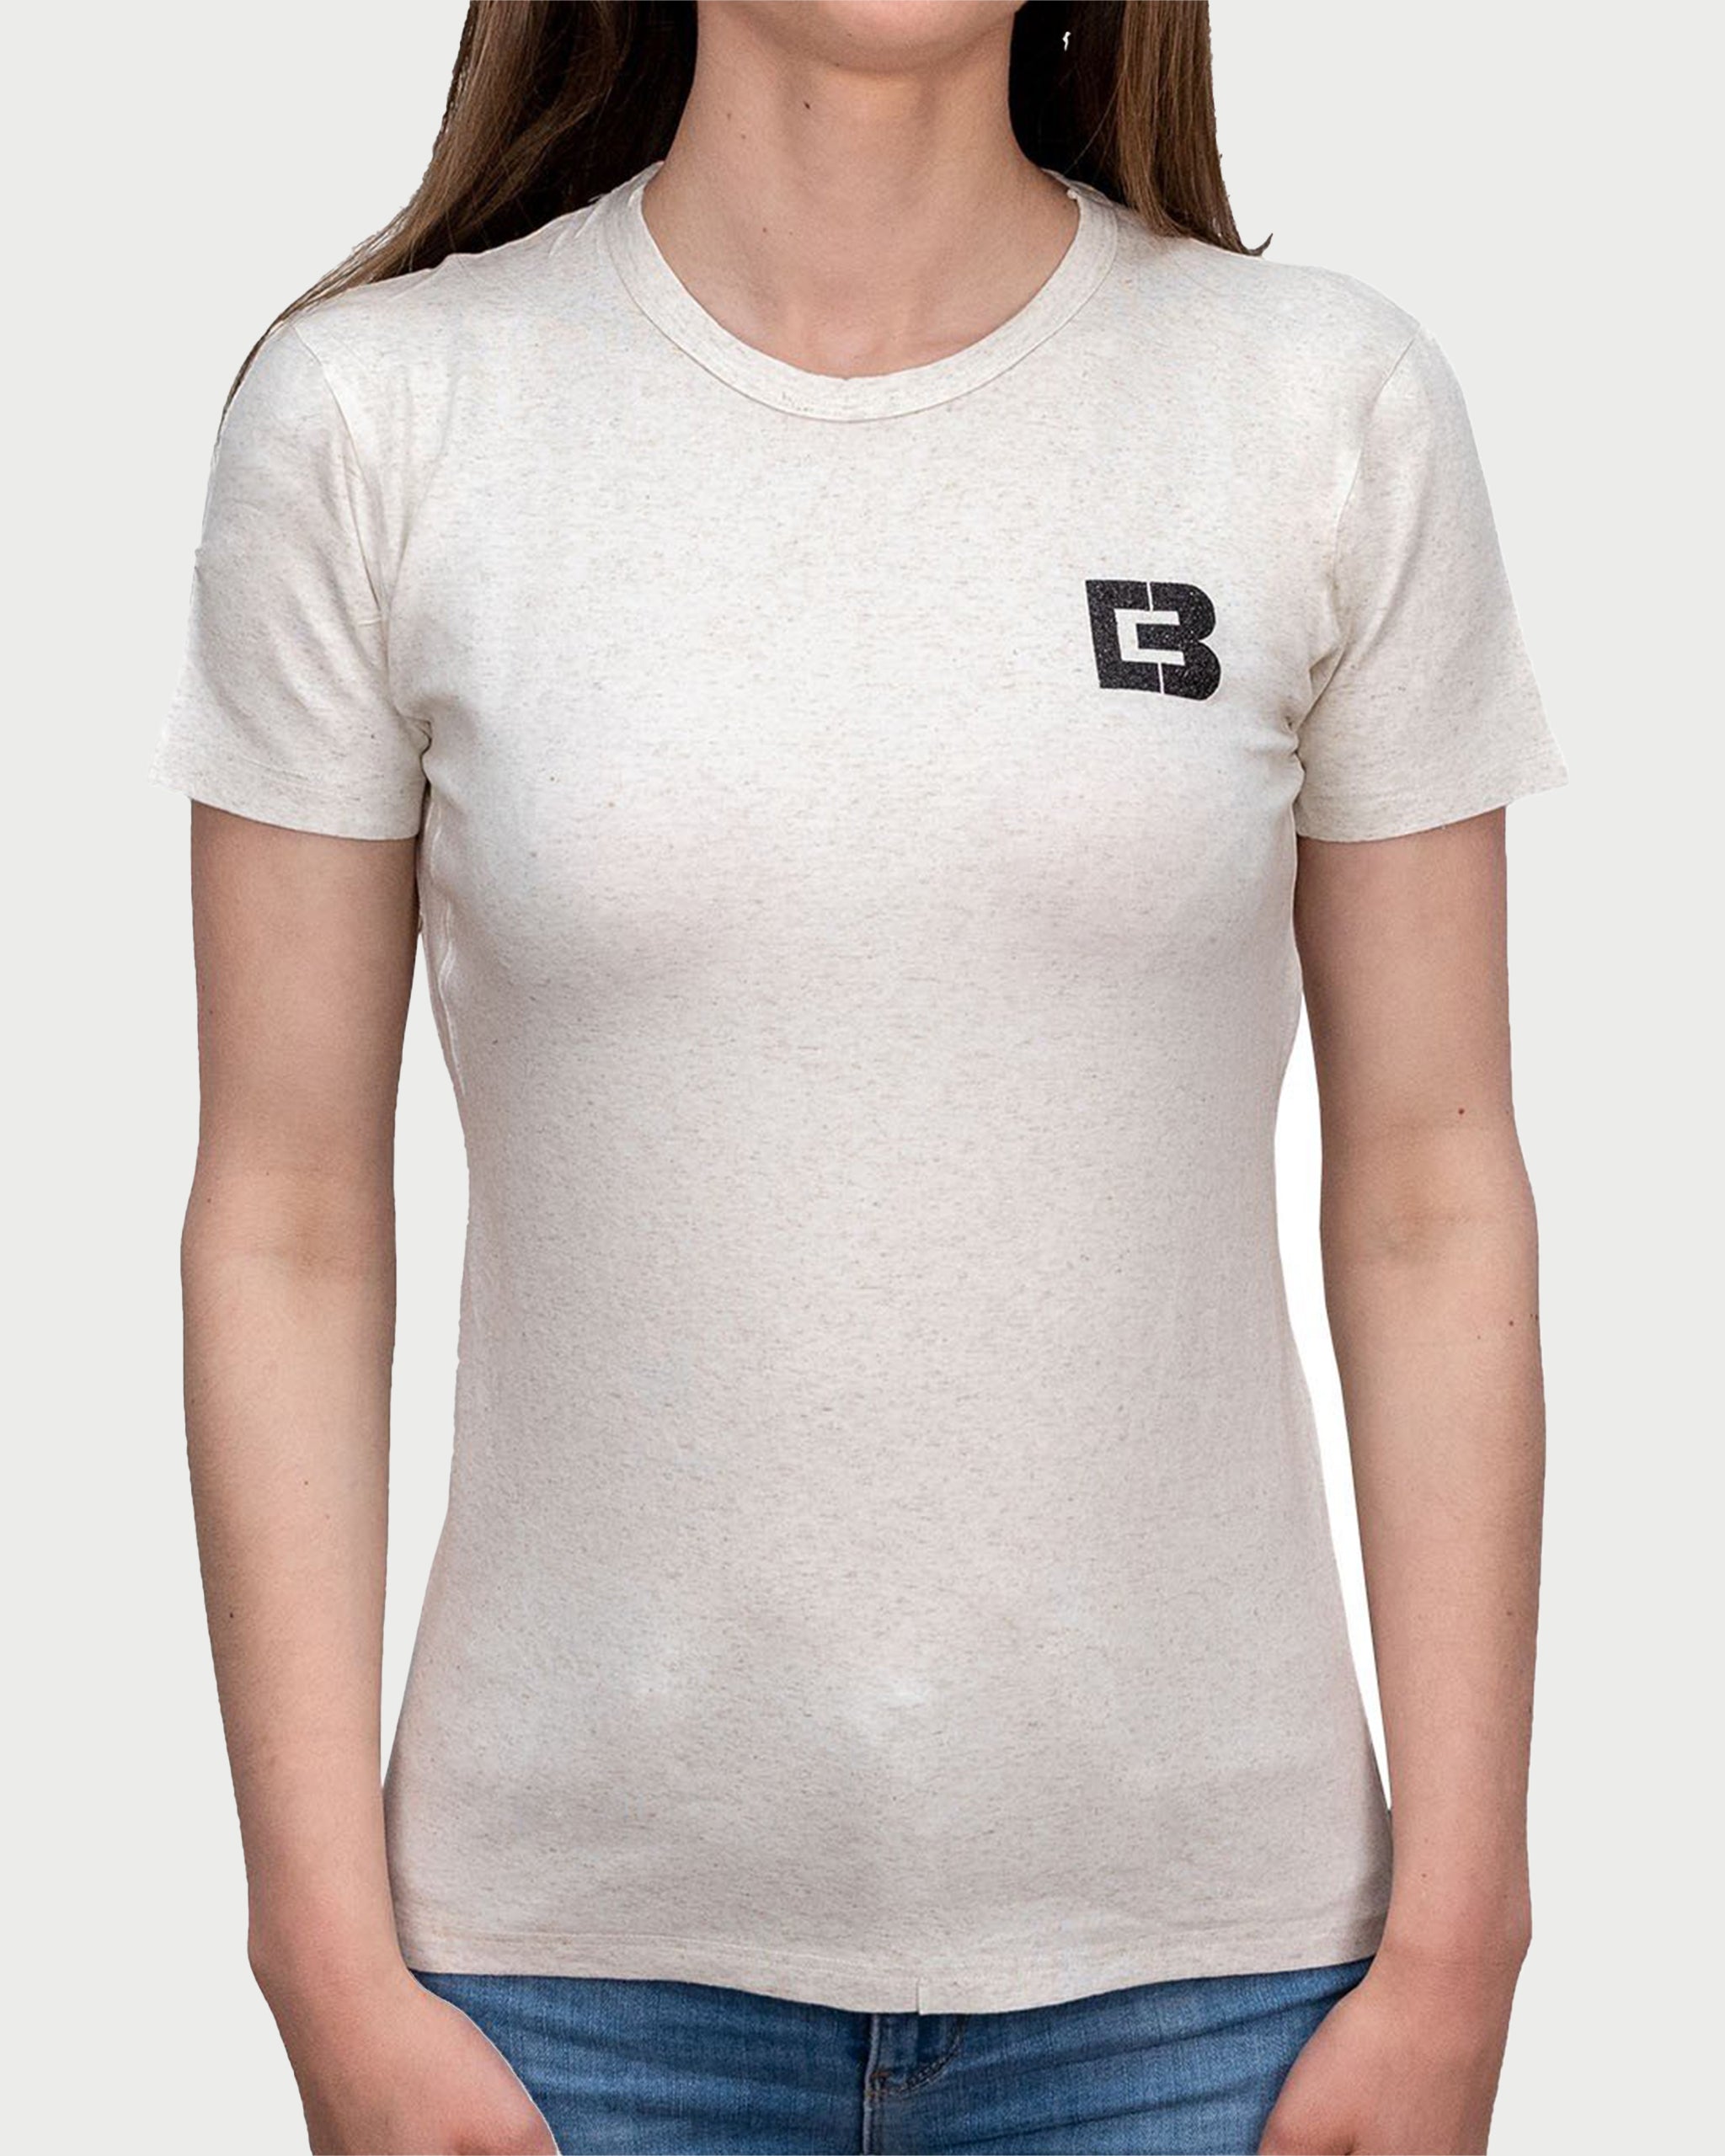 MINIMAL CREAM - tricou minimalist pentru femei